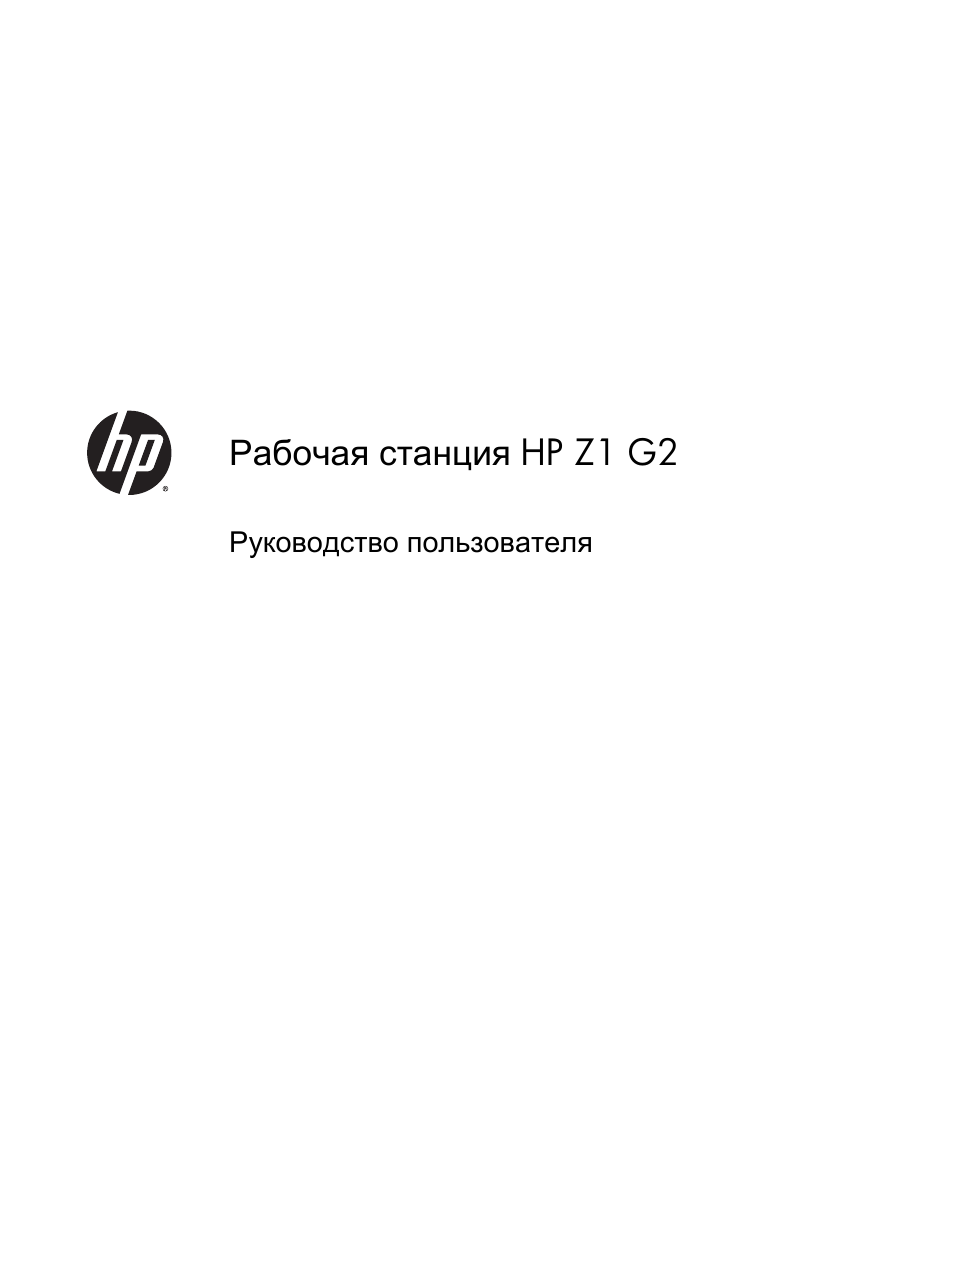 Инструкция по эксплуатации HP Рабочая станция HP Z1 G2 | 71 cтраница